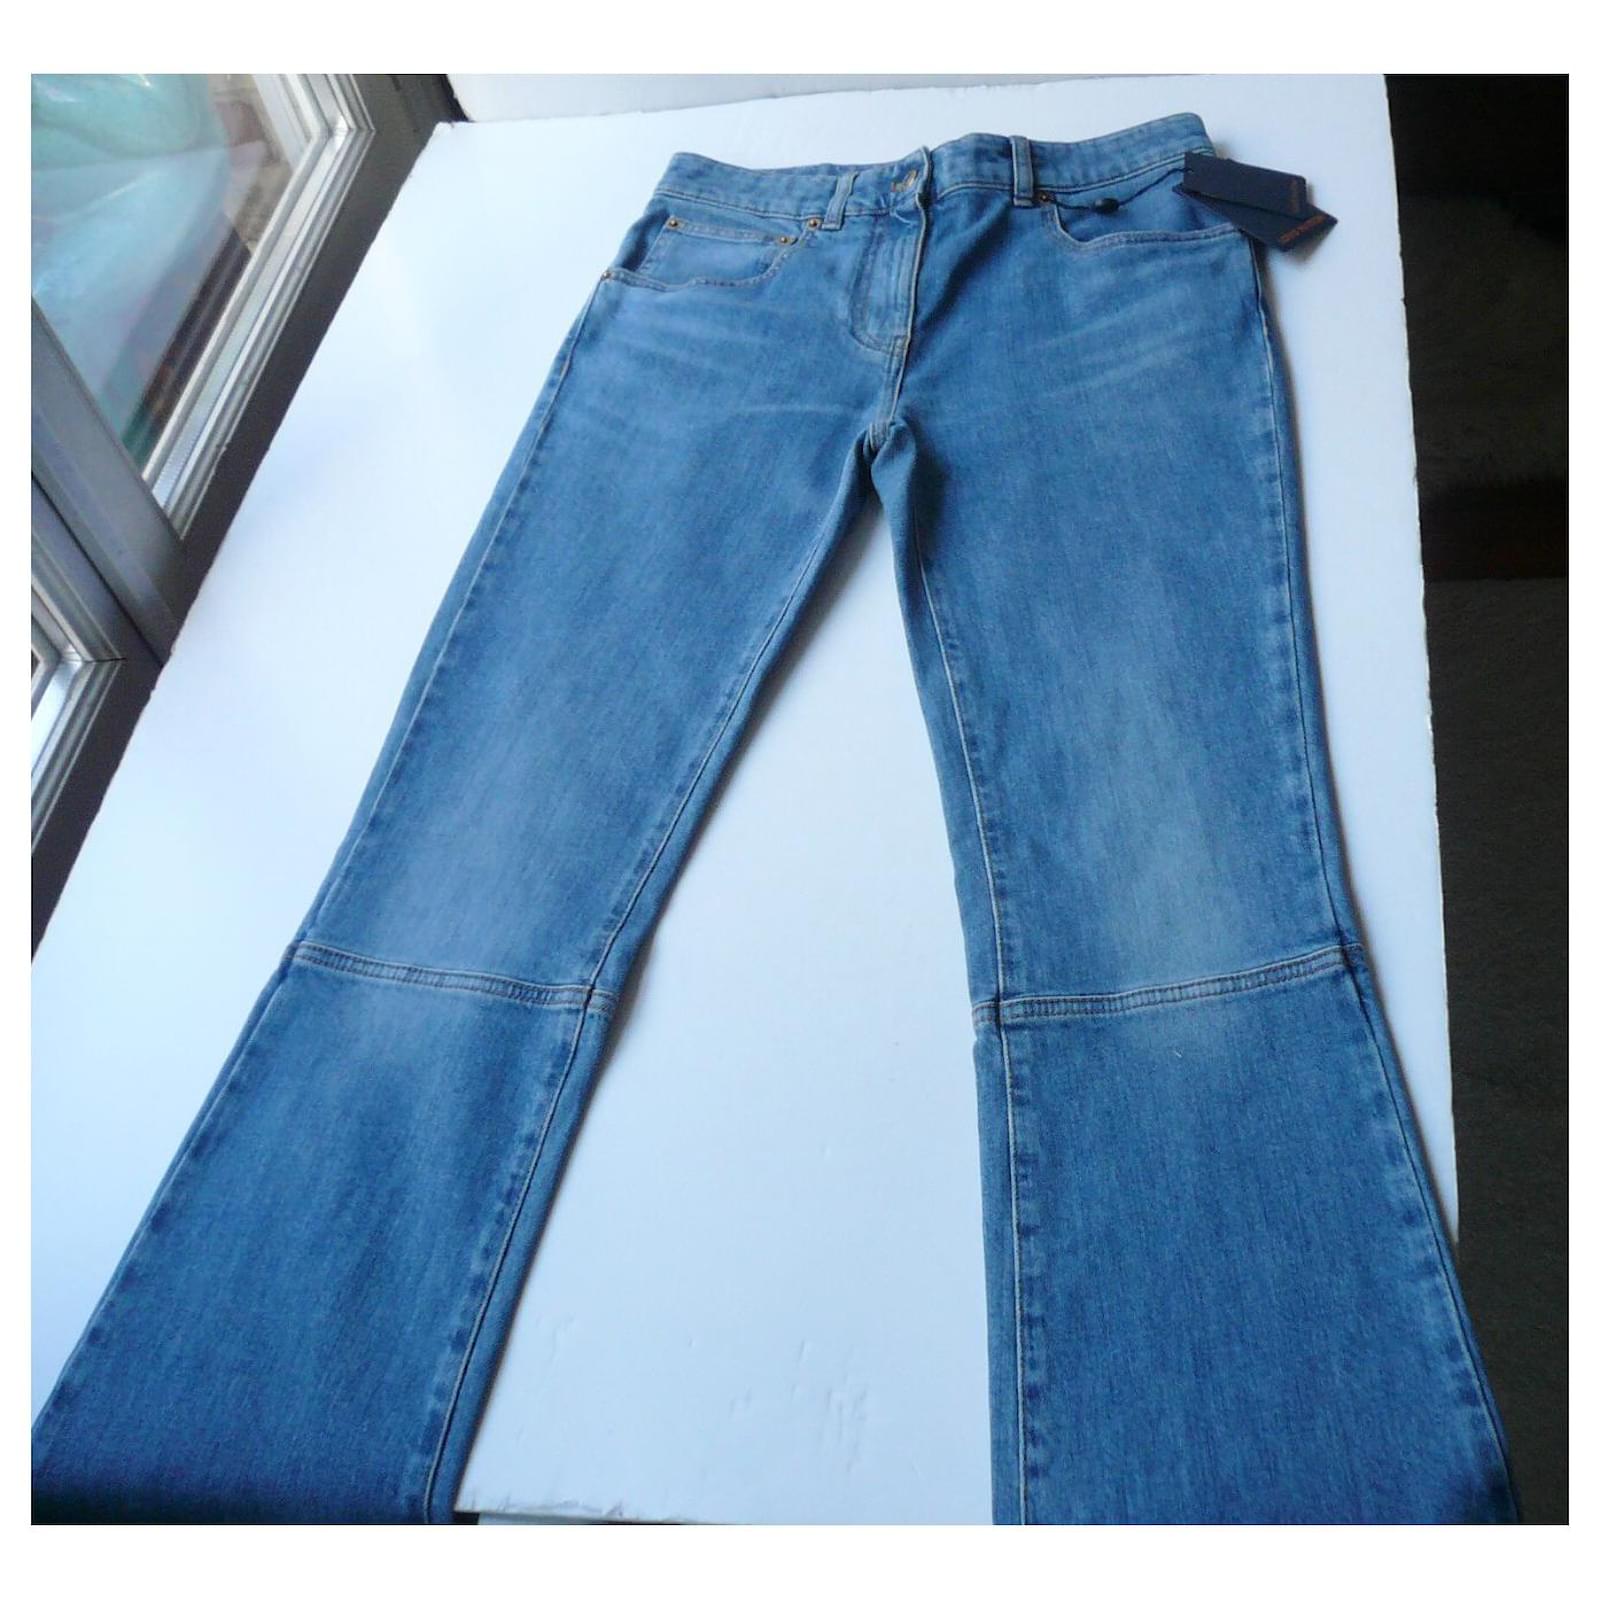 Jeans Louis Vuitton Louis Vuitton New Blue Jeans with T label38 Size 38 FR